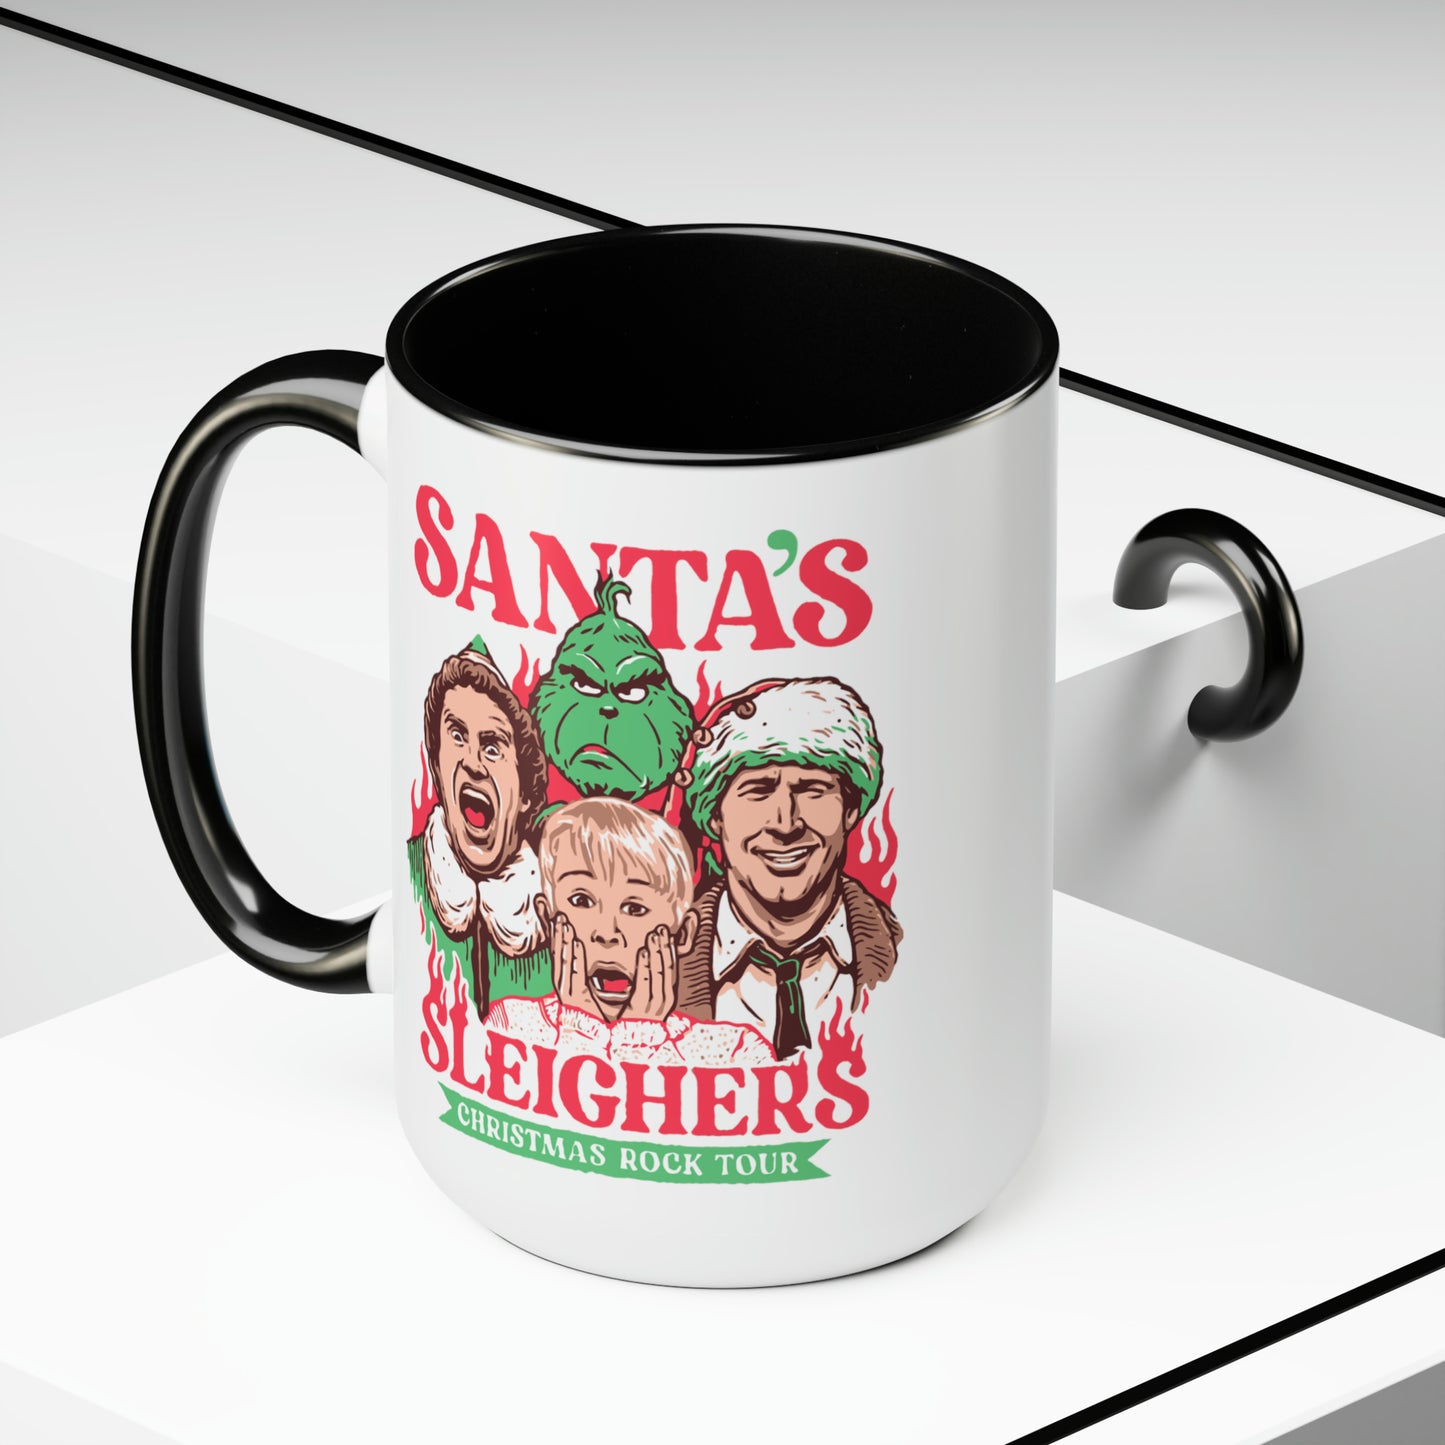 Santa Sleighers Mug